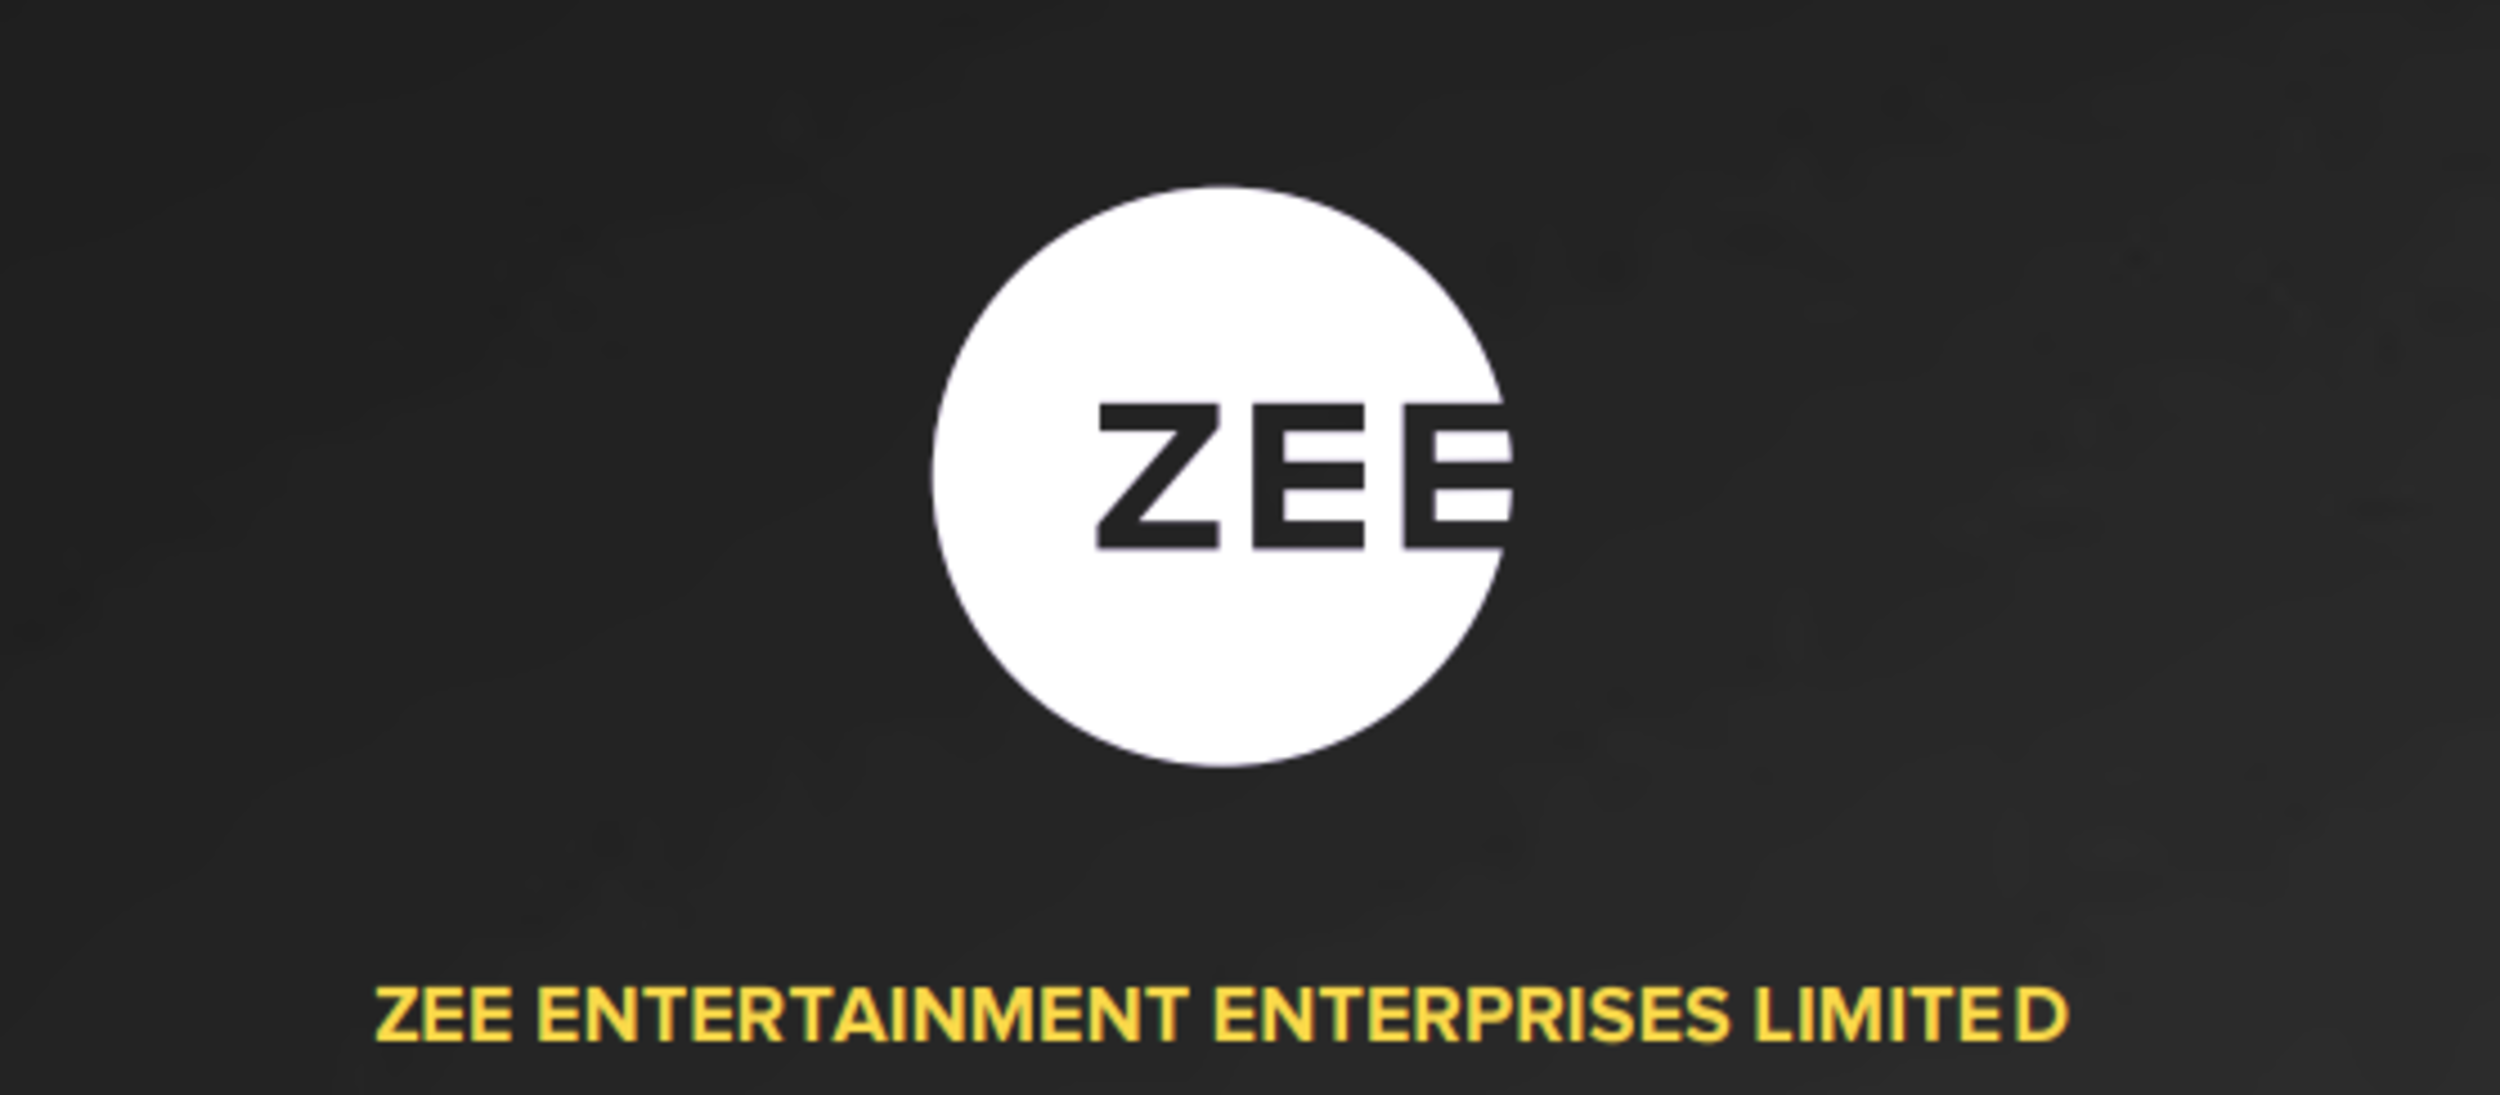 Enterprises limited enterprises limited. Zee5 logo. Plan b Hi Zee логотип. Zeel Project logo. Galin Entertainment логотип.